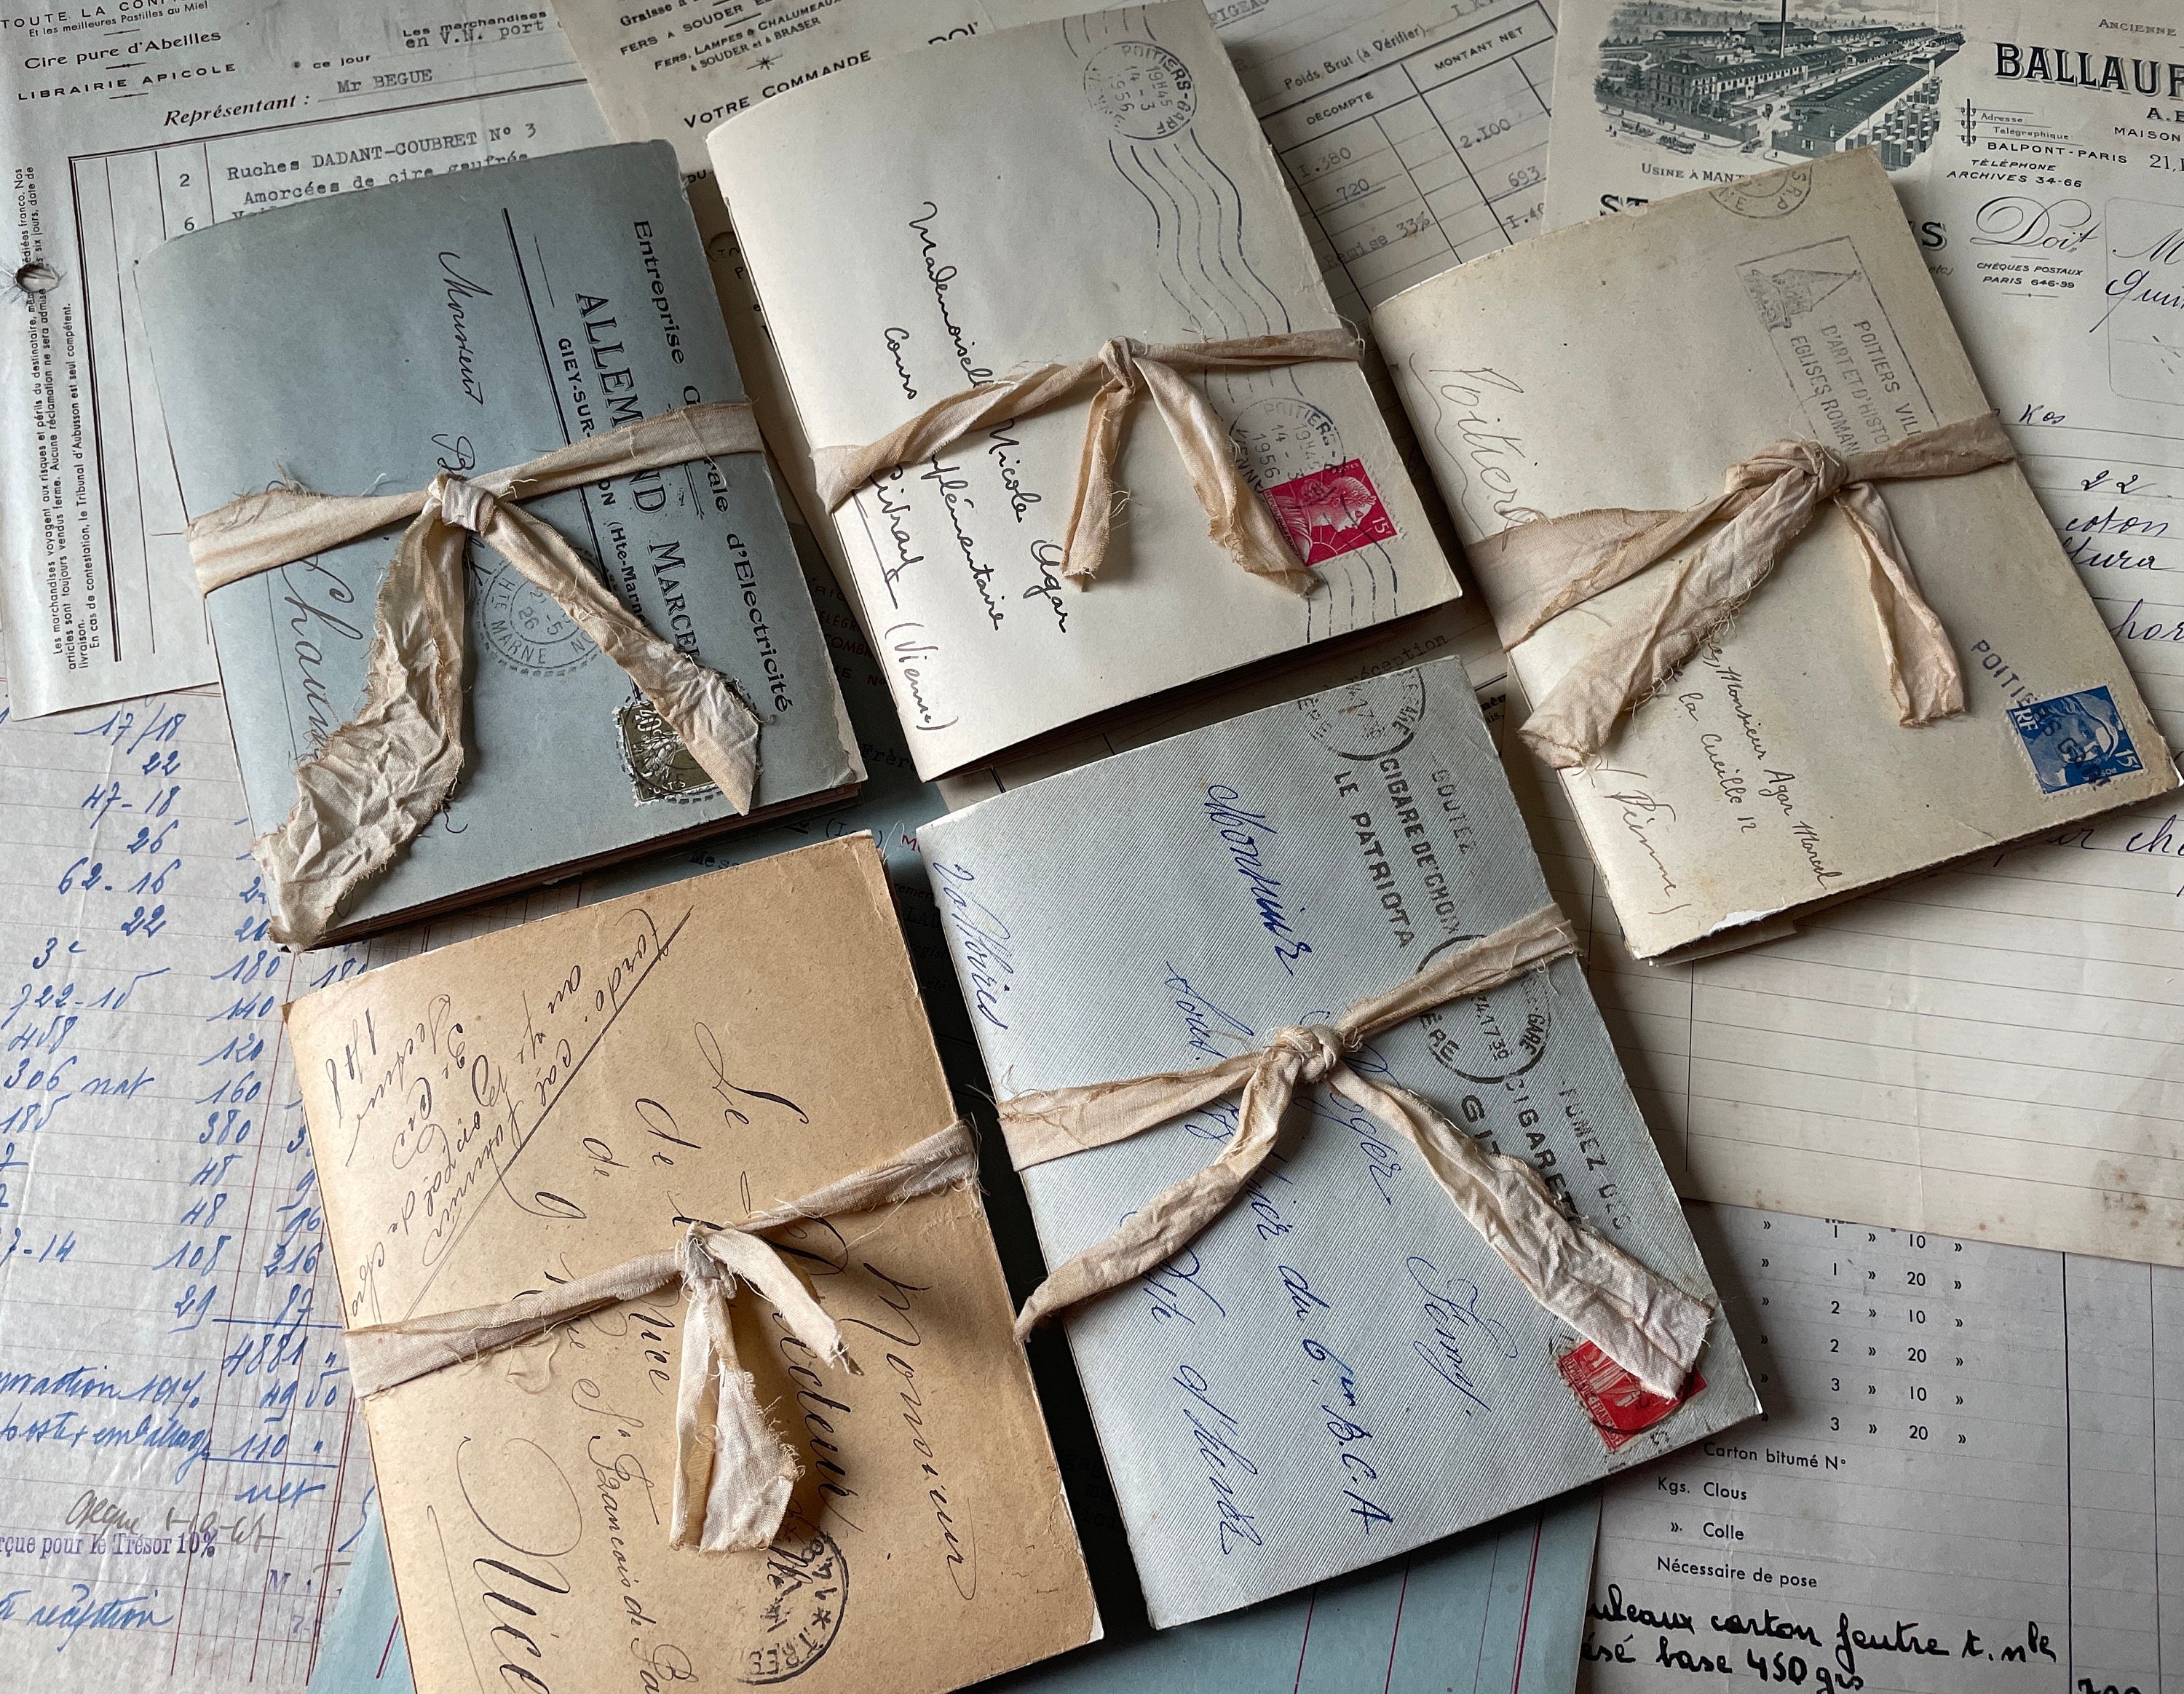 Enveloppe vintage en forme de vieille lettre d'amour 4k · Creative Fabrica